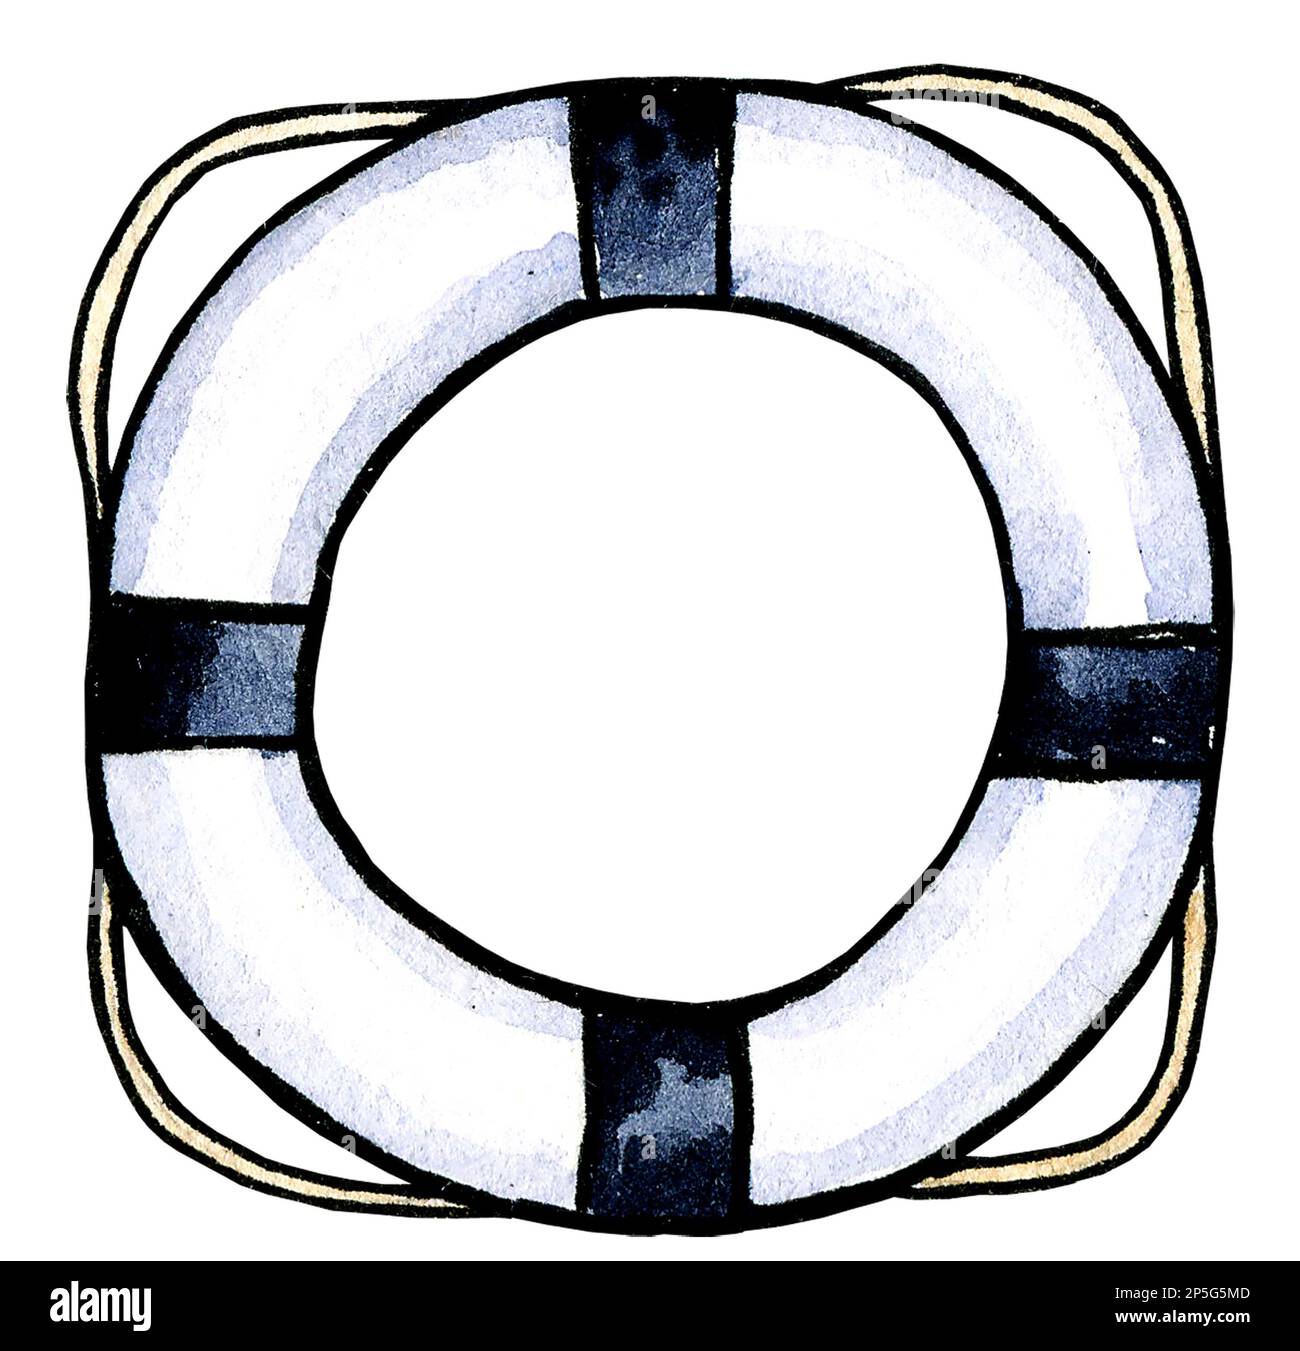 Ligne de vie aquarelle sur fond blanc, couleur blanche et bleue, esquisse dessinée à la main, illustration marine Banque D'Images